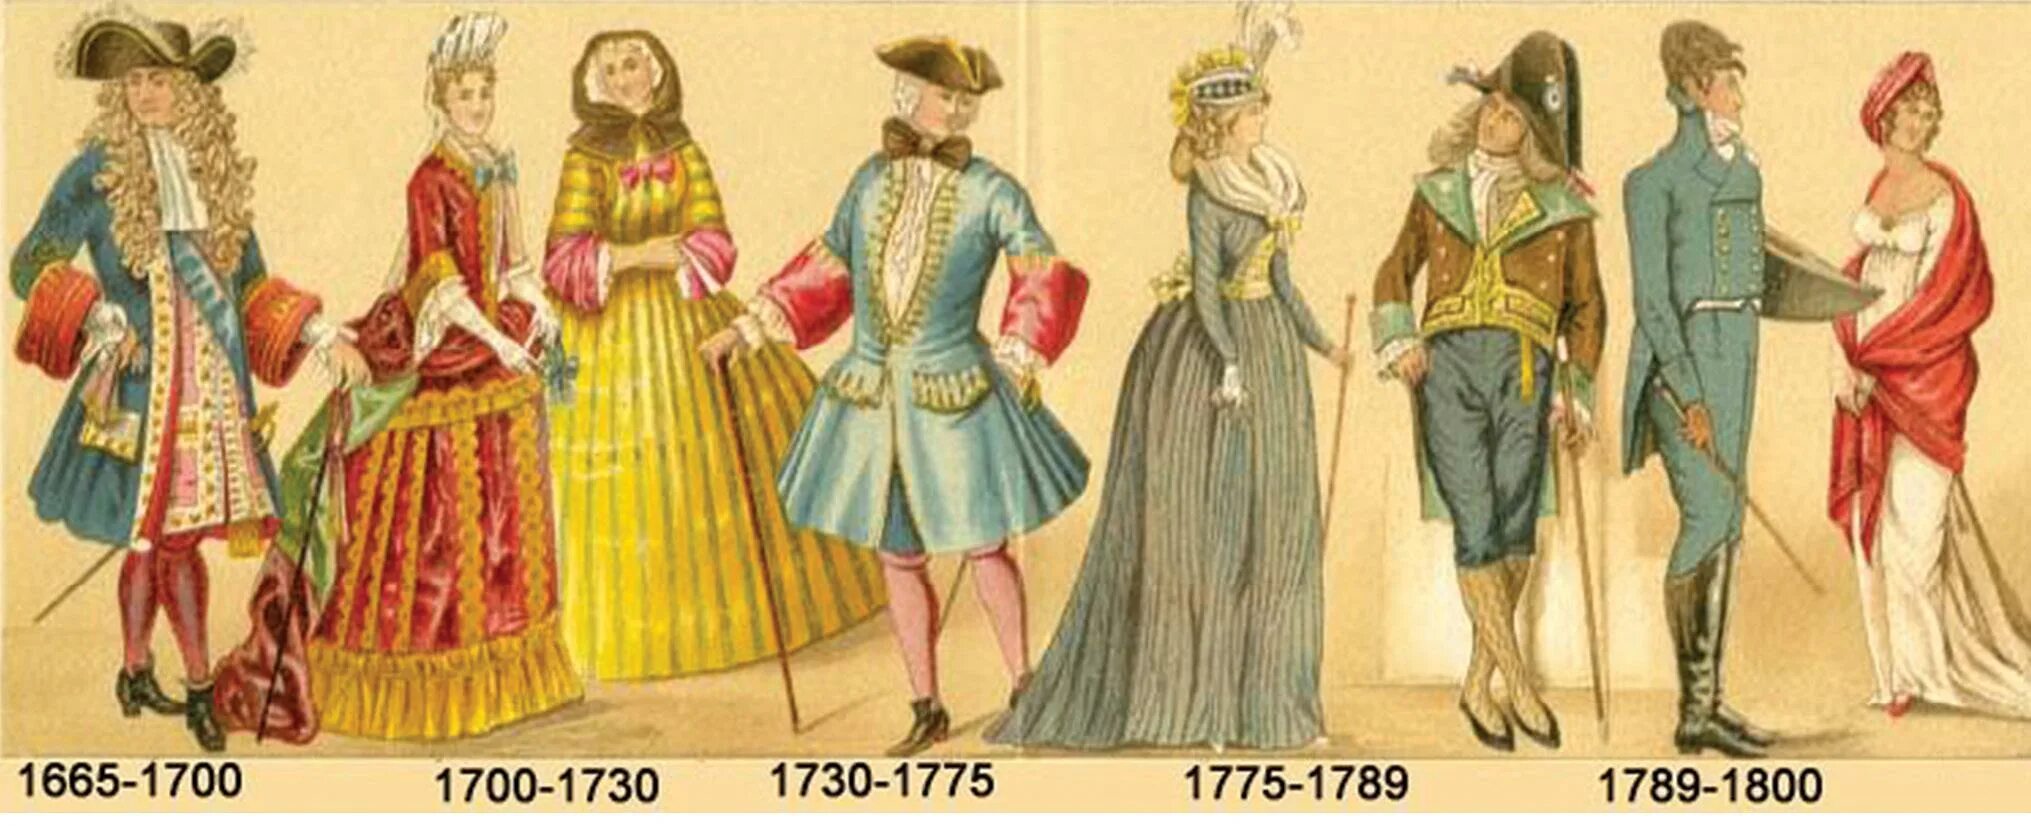 1700 1 7. Костюм французской аристократии 17-18 века. Европейская одежда 17 века 18 века. Одежда дворян 17 века в Европе. Мода европейцев 17 18 век.